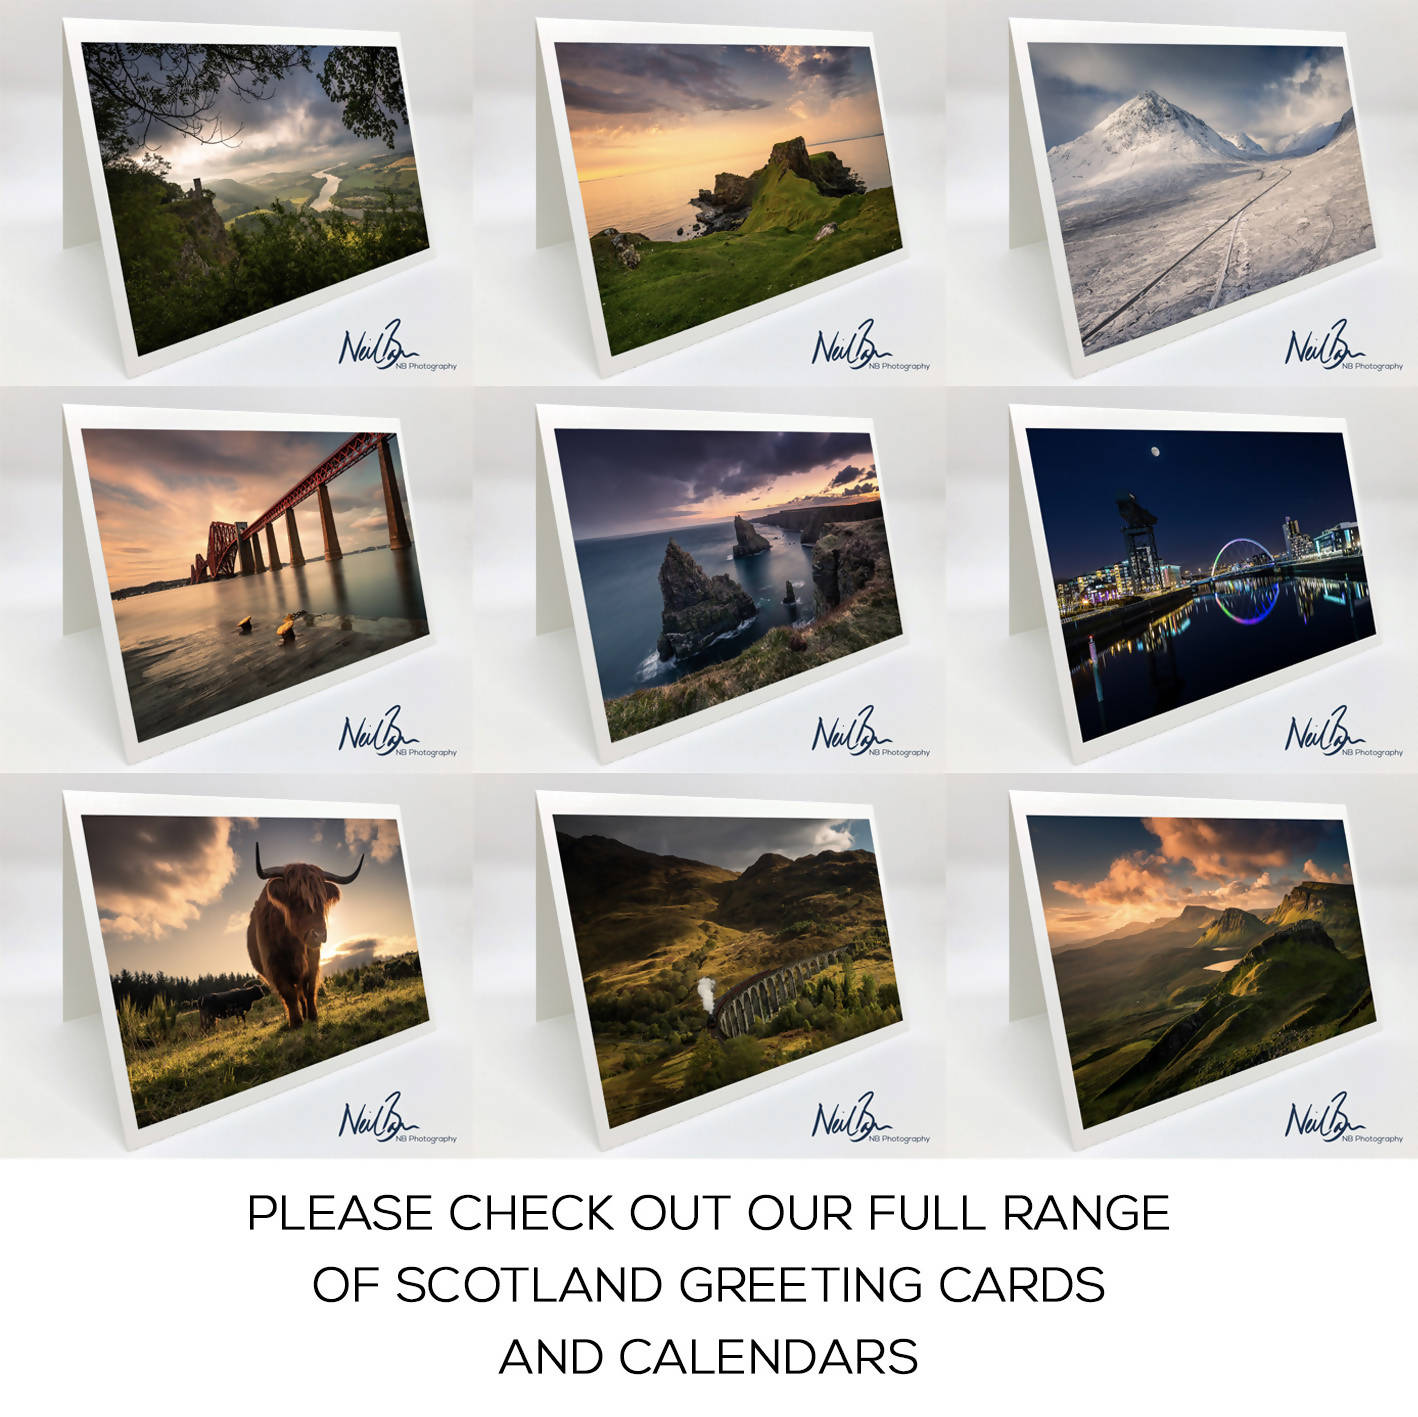 Dunnottar Castle near Stonehaven, Aberdeenshire - Scotland Greeting Card - Blank Inside